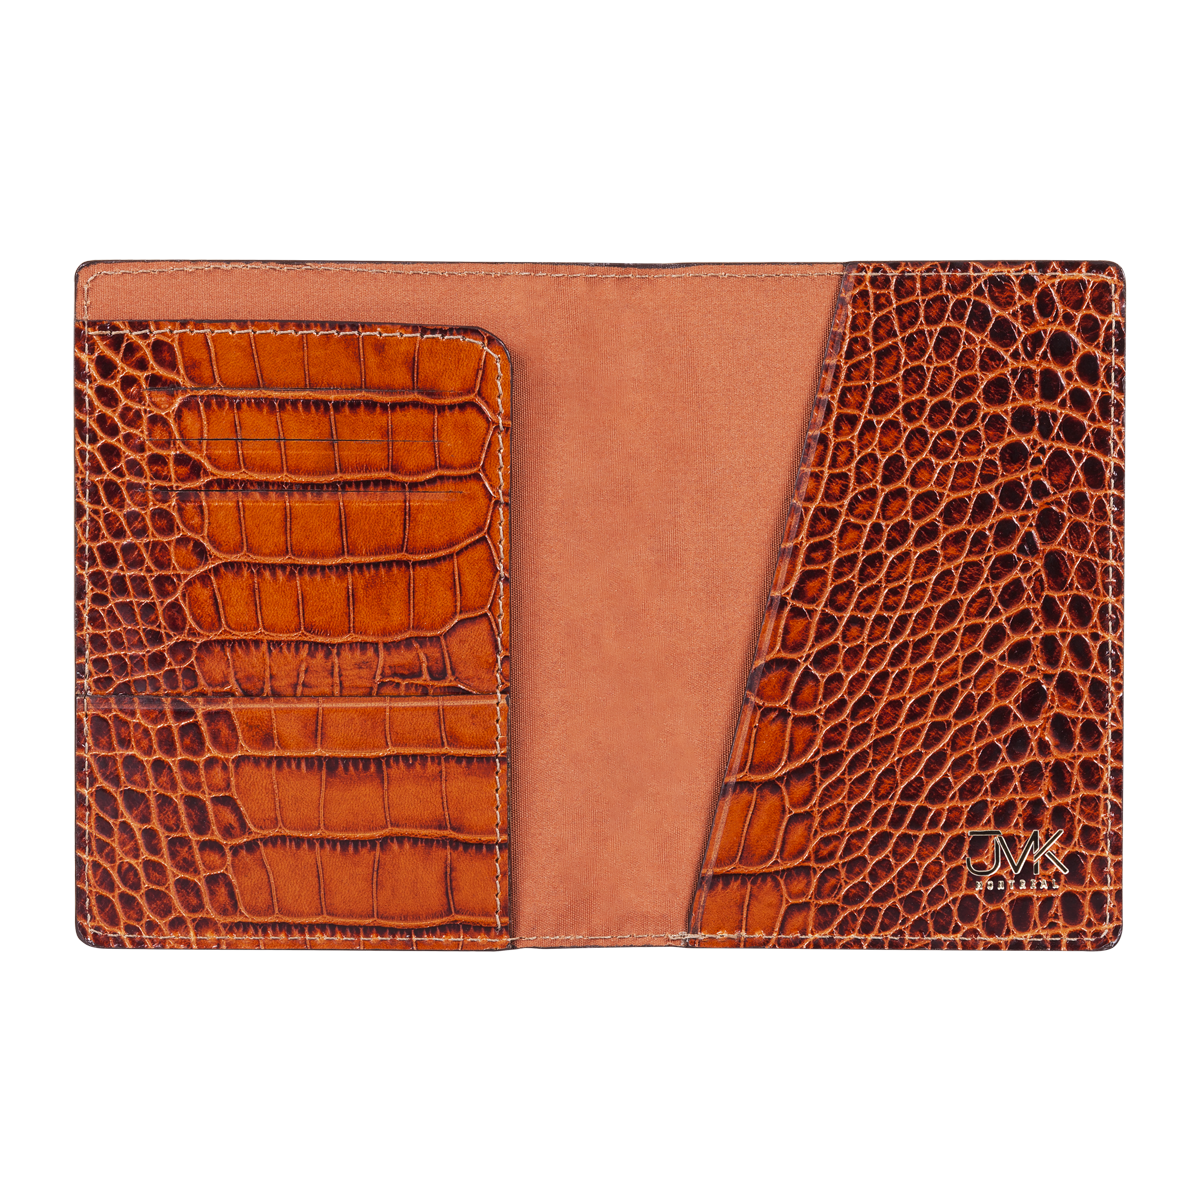 Passport Holder, Croco Leather Tan, MAISON JMK-VONMEL Luxe Gifts